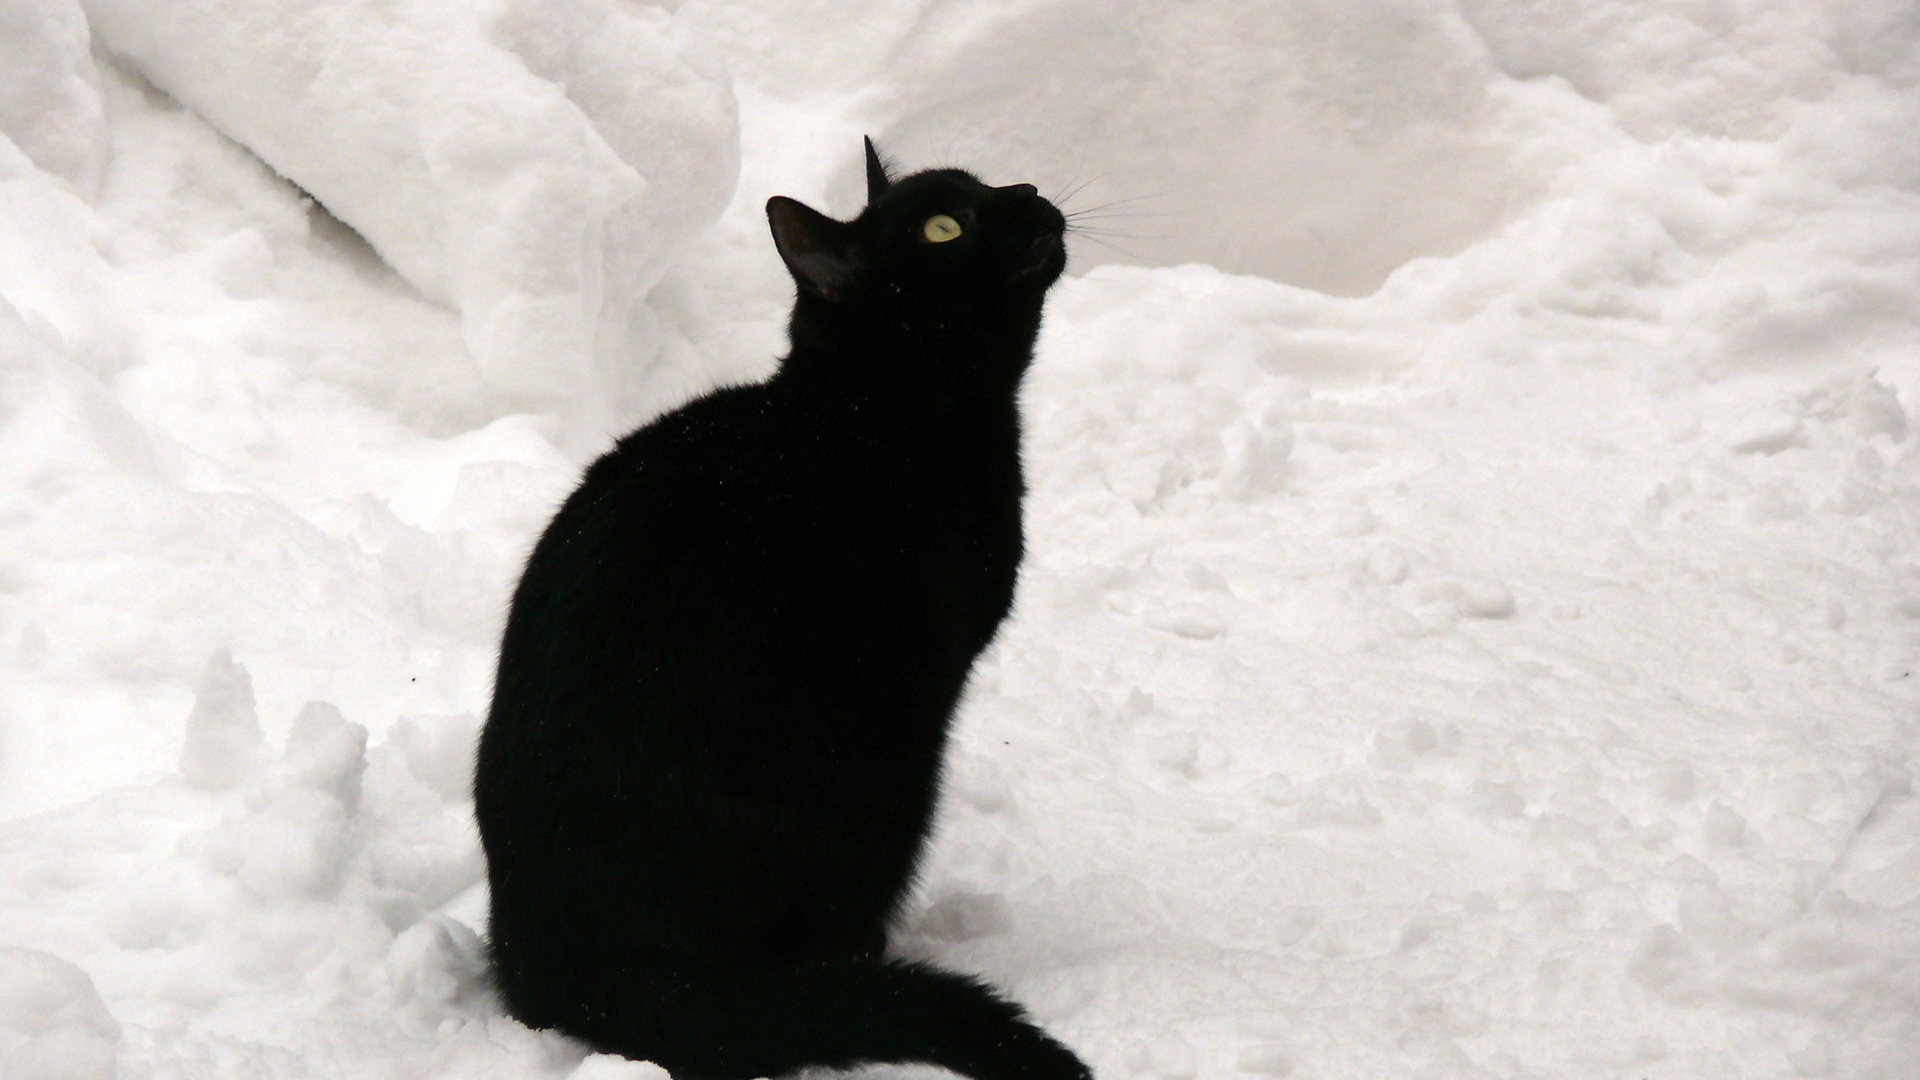 Чёрный кот на снегу смотрит вверх